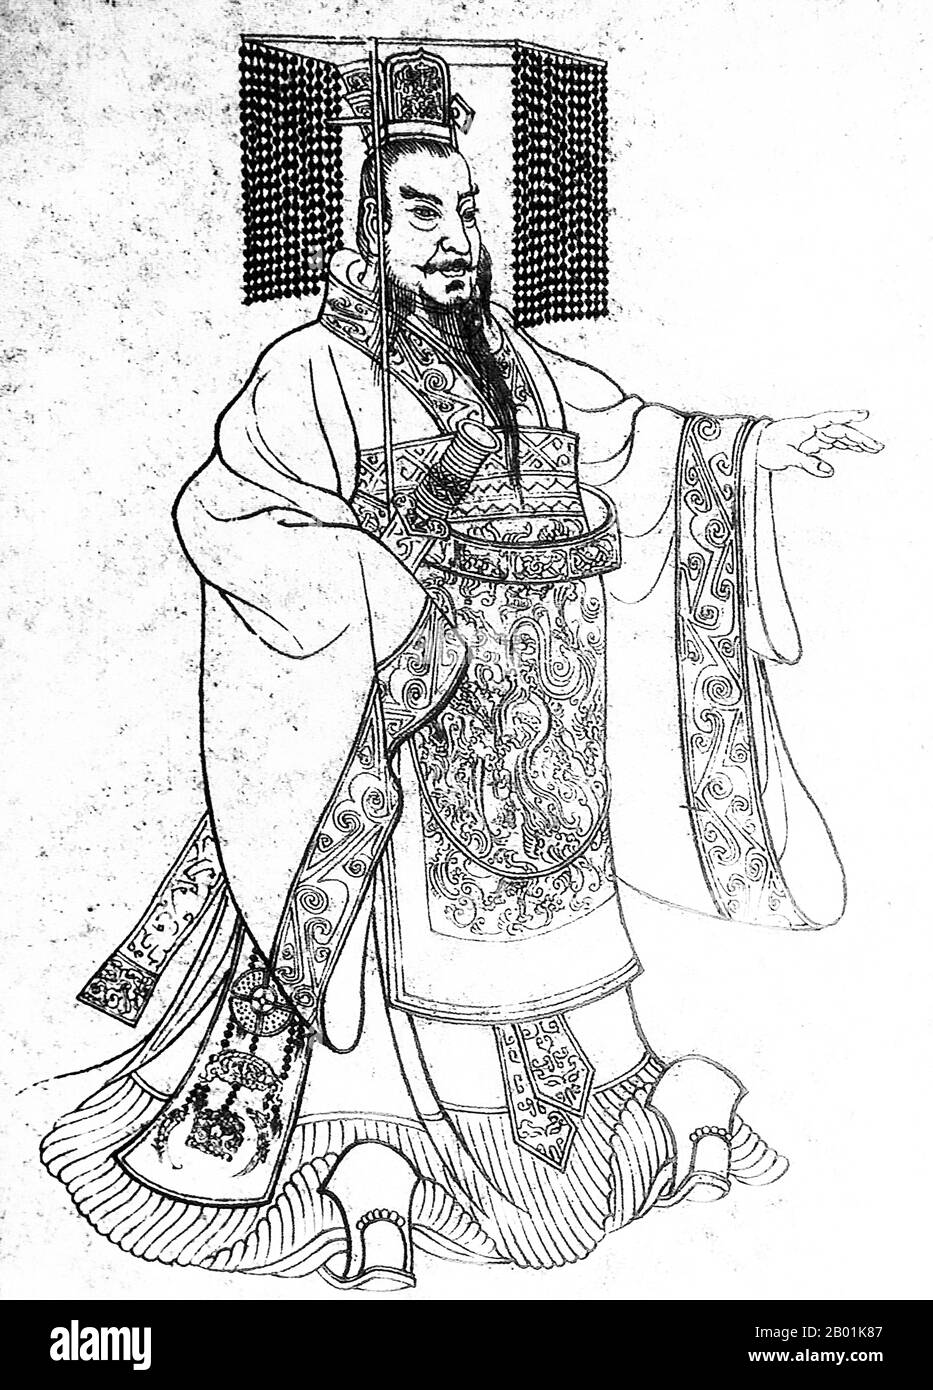 Chine : Qin Shu Huang / Qin Shi Huangdi (259-210 av. J.-C.), Premier empereur d'une Chine unifiée. Dessin à l'encre, c. 18e siècle. Qin Shi Huang, nom personnel Ying Zheng, était roi de l'État chinois de Qin de 246 à 221 av. J.-C. pendant la période des États combattants. Il devint le premier empereur d'une Chine unifiée en 221 av. J.-C., et régna jusqu'à sa mort en 210 av. J.-C. à l'âge de 49 ans. Se faisant appeler « Premier empereur » après l'unification de la Chine, Qin Shi Huang est une figure centrale de l'histoire chinoise, inaugurant près de deux millénaires de domination impériale. Banque D'Images